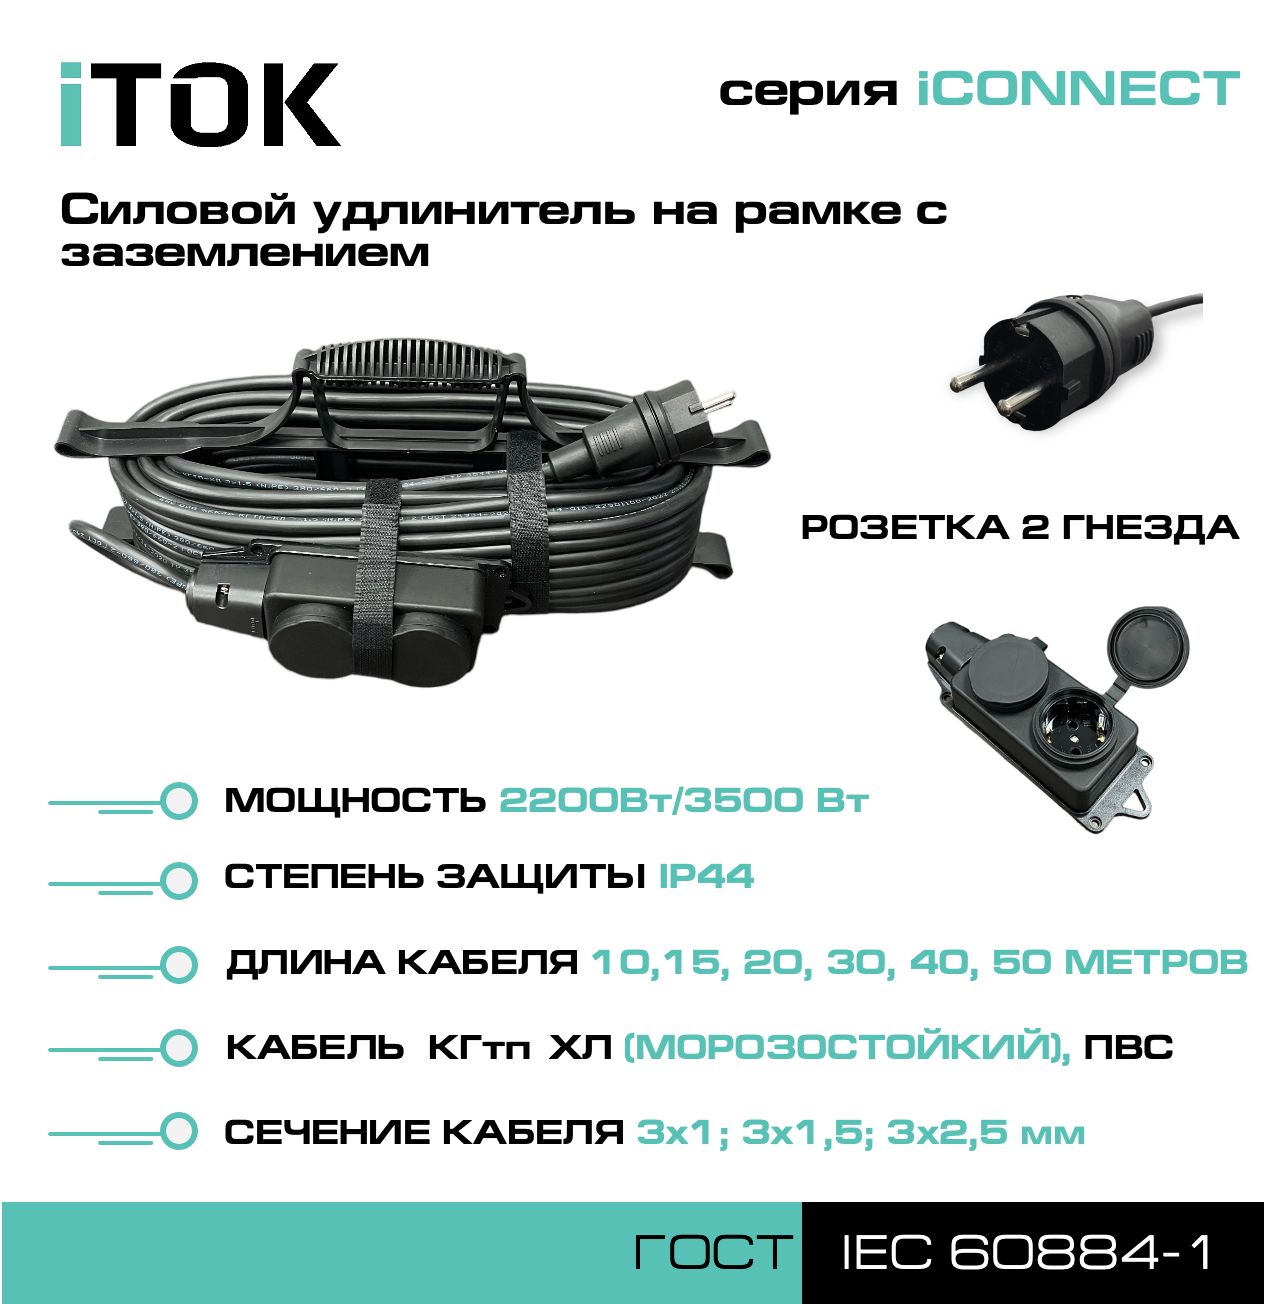 Удлинитель на рамке с заземлением серии iTOK iCONNECT ПВС 3х1 мм 2 гнезда IP44 30 м зарядные гнезда usb в виде клавиши marina 4 8 а more 10264237